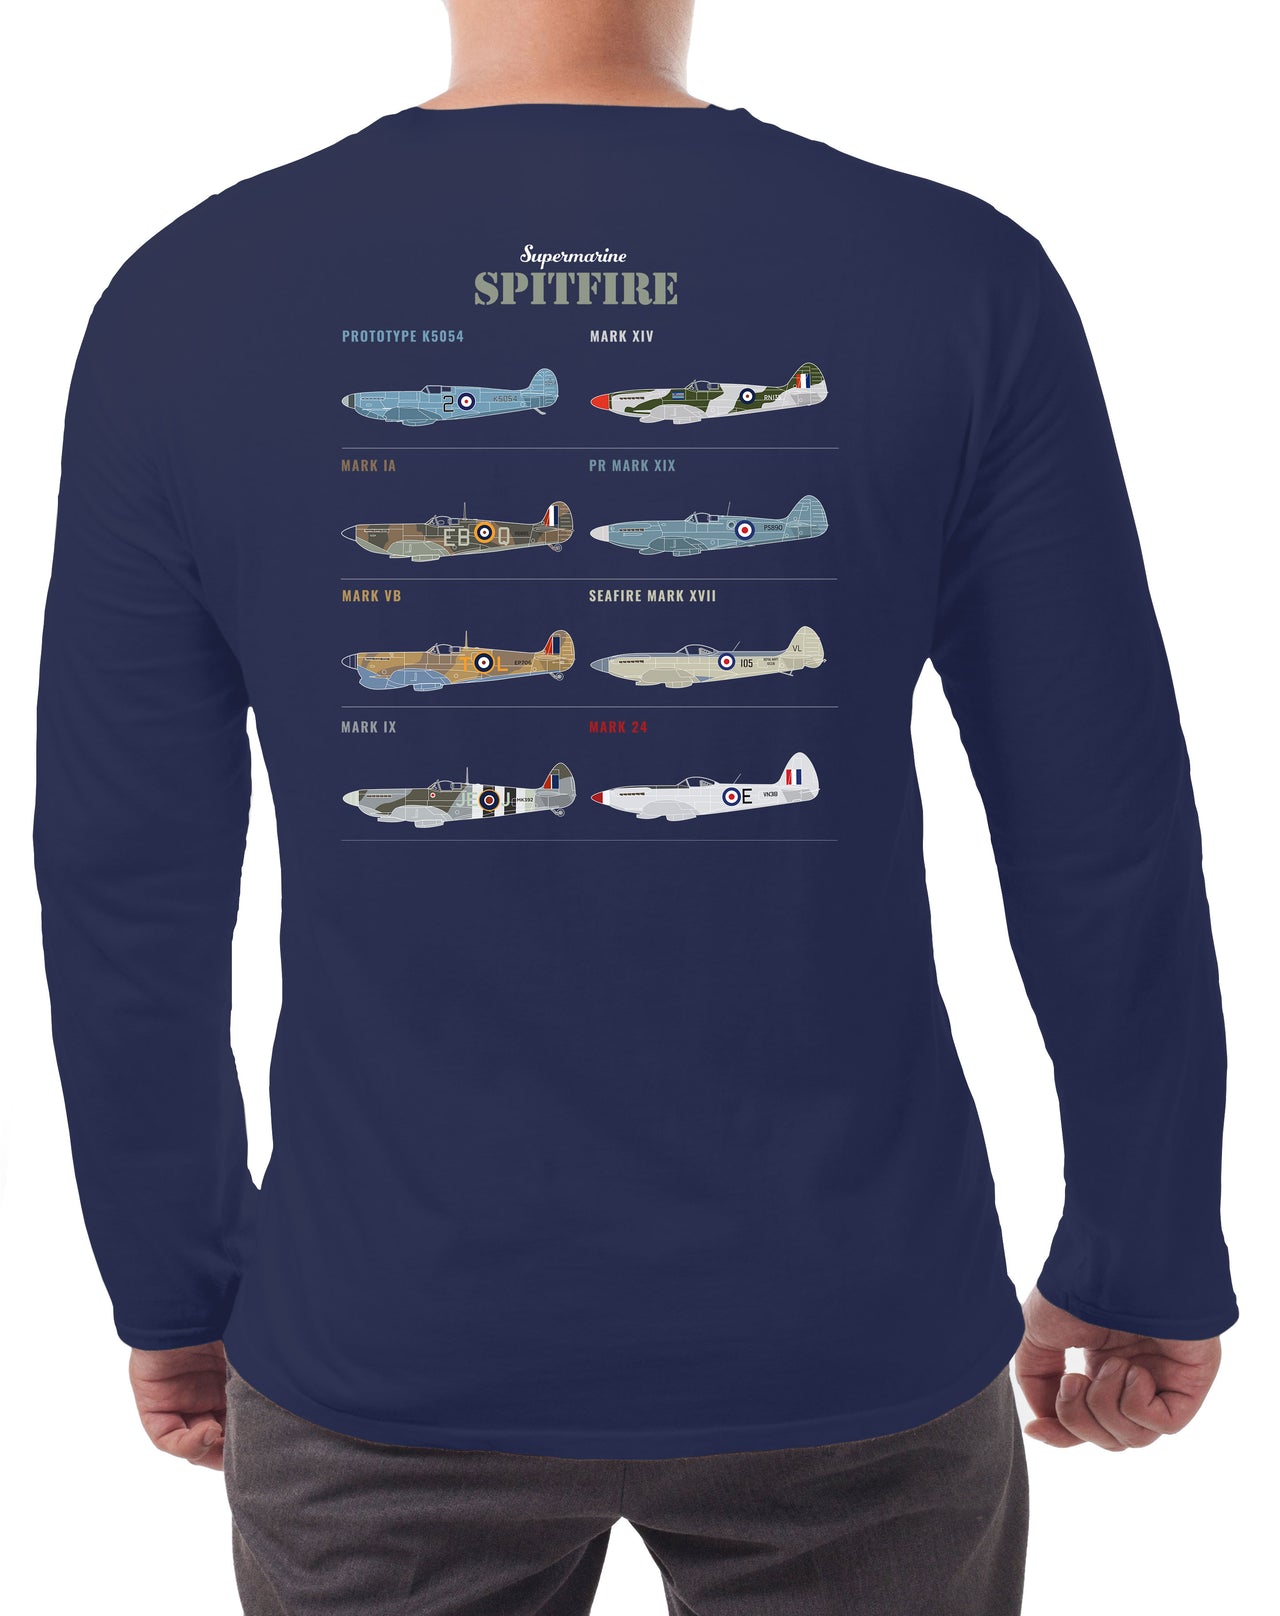 Spitfire PR MK XIX - Long-sleeve T-shirt